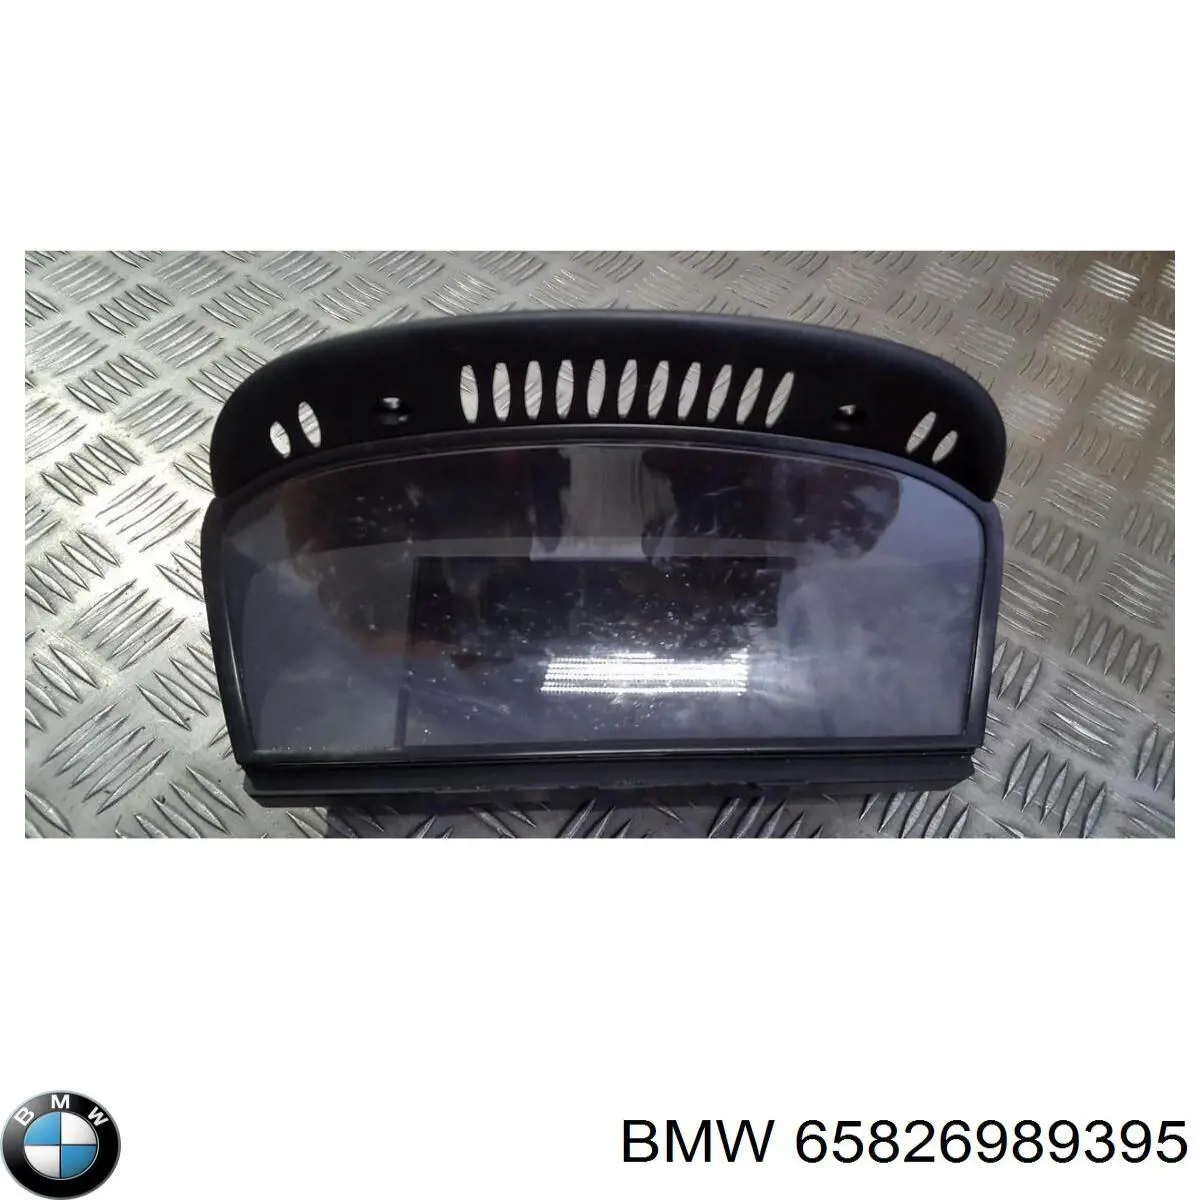 65826989395 BMW pantalla multifuncion